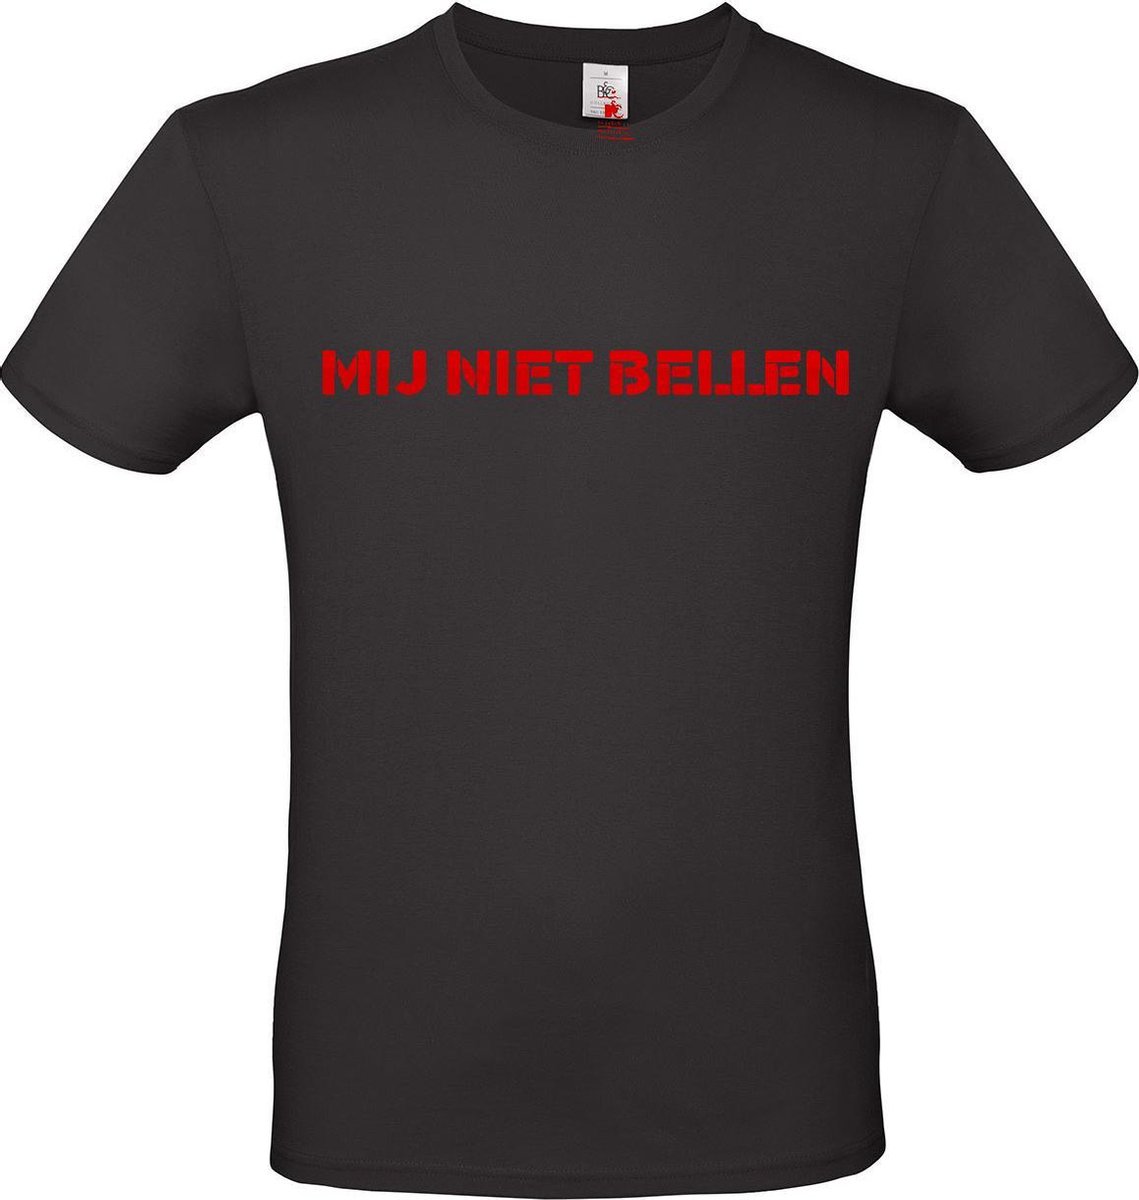 T-shirt met opdruk “Mij niet bellen”, Zwart T-shirt met rode opdruk. | Chateau Meiland | Martien Meiland | BC custom